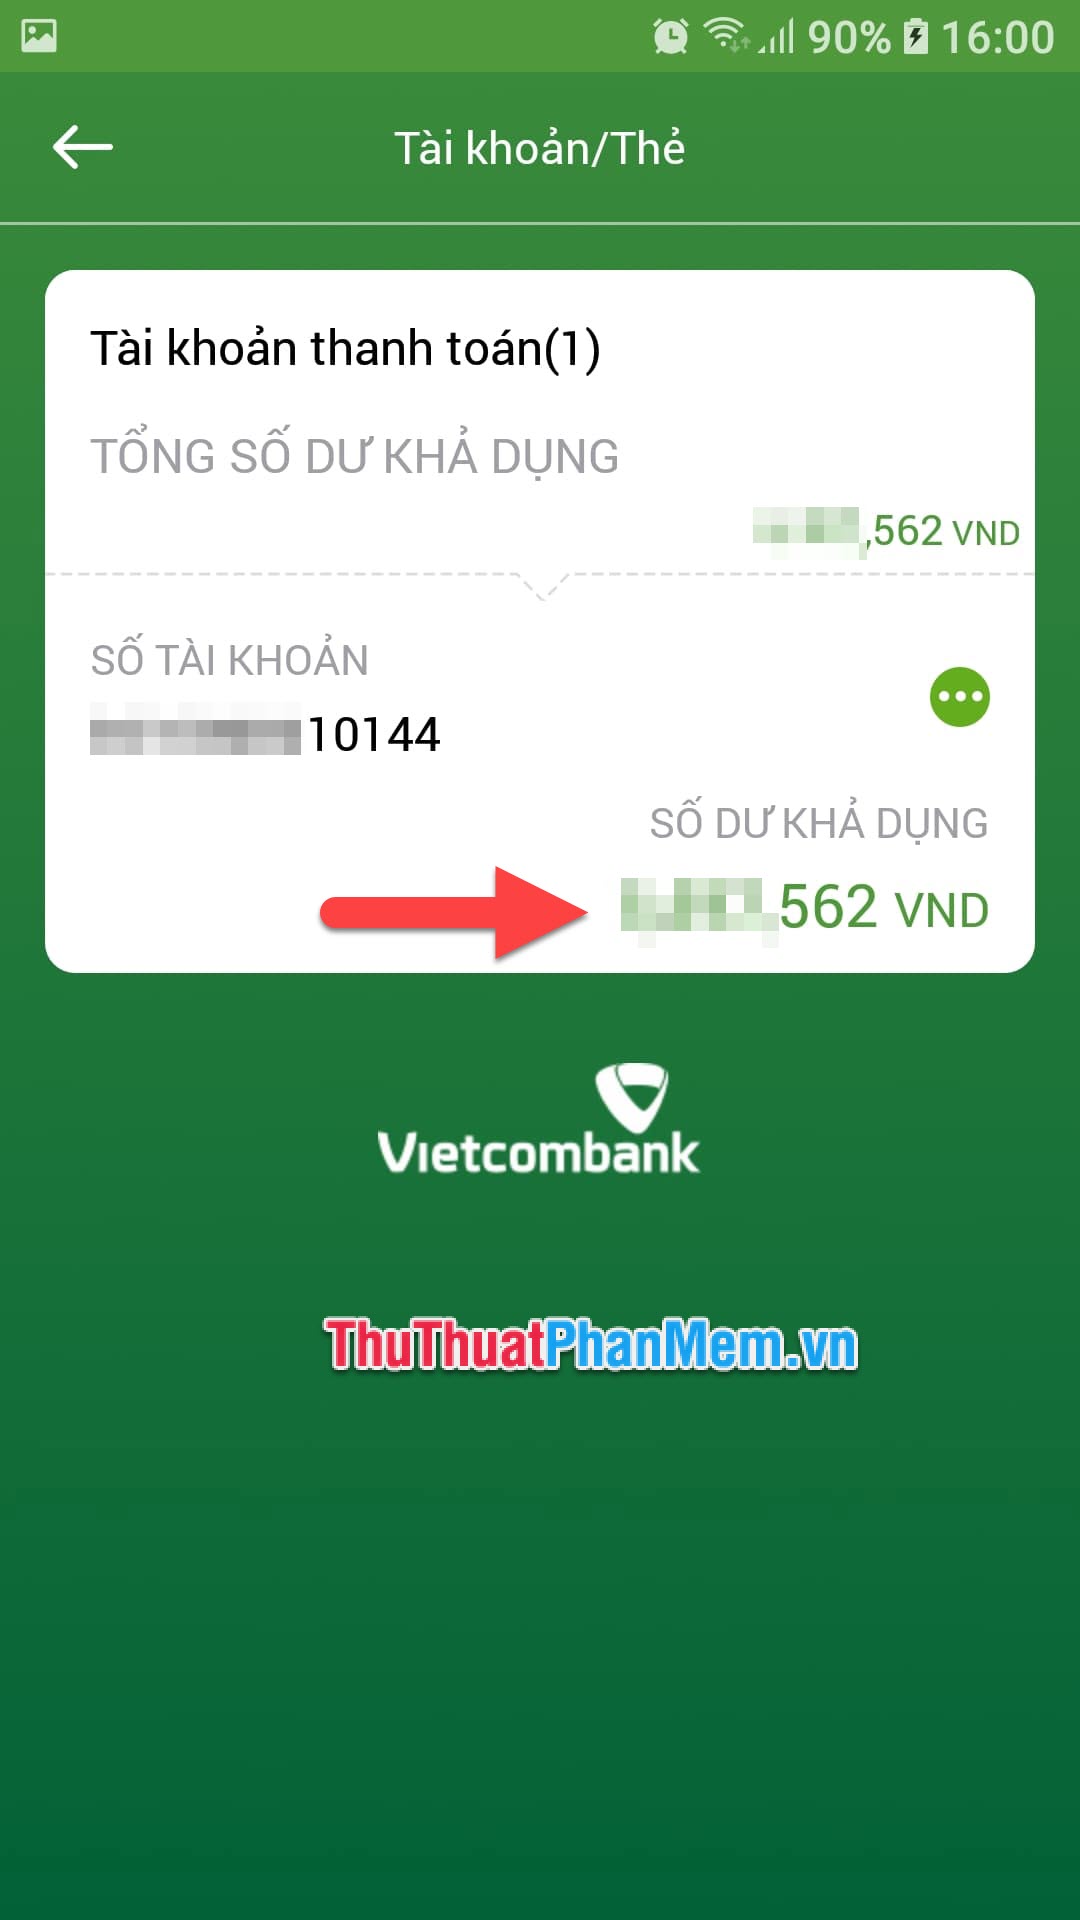 Bạn có thể thấy số dư tài khoản VietcomBank của mình